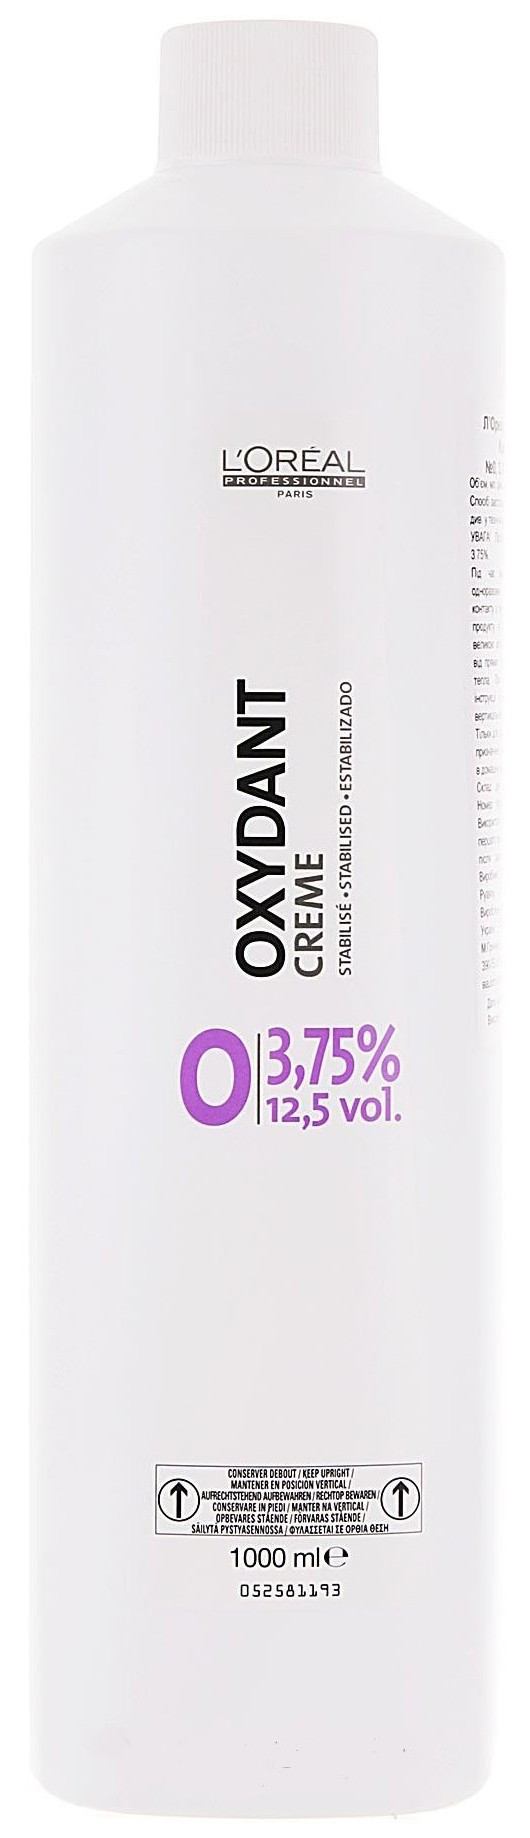 Проявитель L'Oreal Professionnel Oxydant Creame 3,75% 1000 мл проявитель l oreal professionnel inoa ods2 6% 20 vol 1000 мл